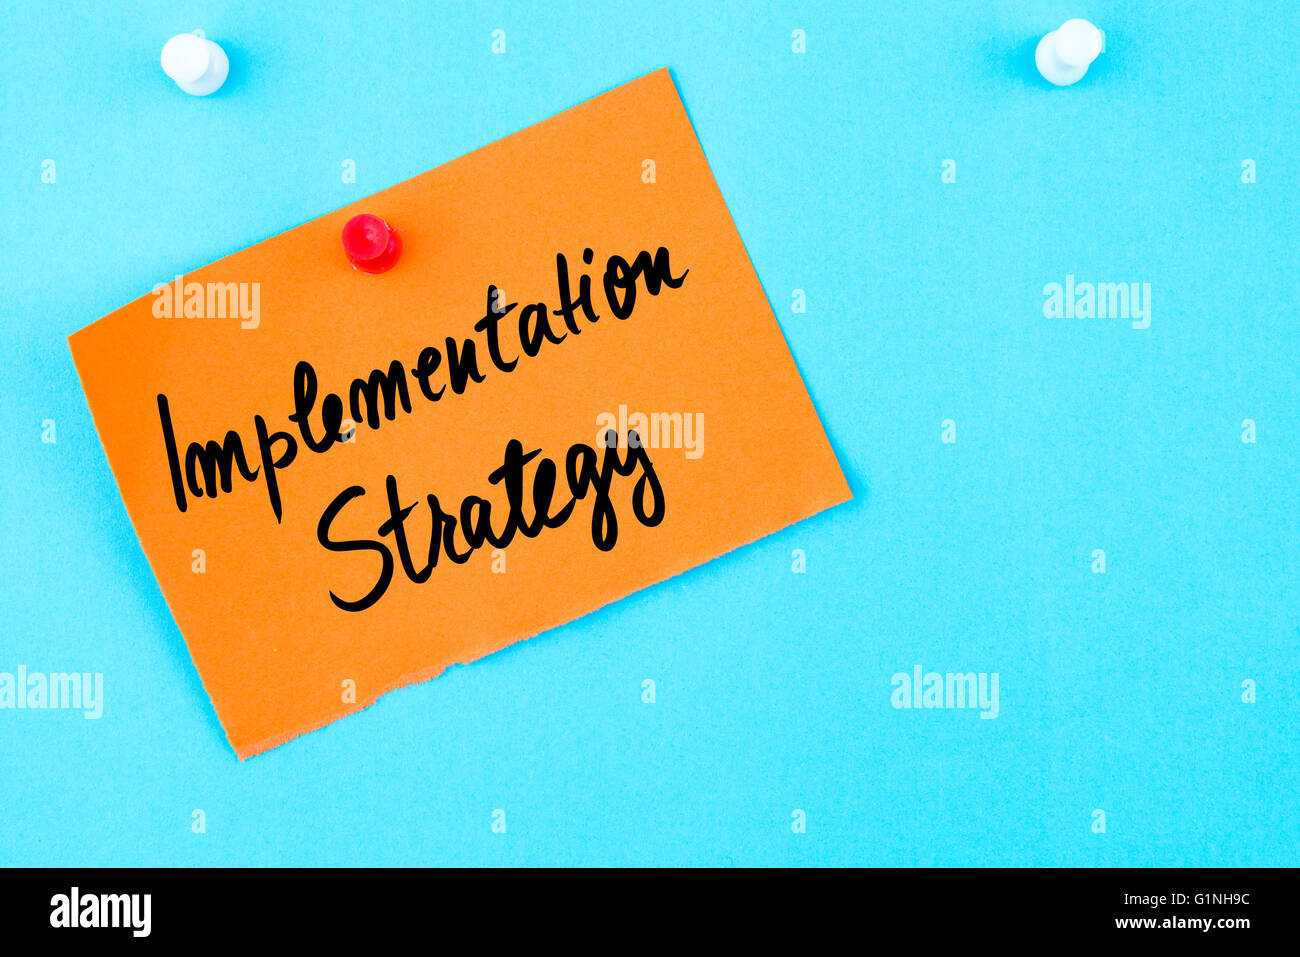 Strategia di implementazione scritta sulla carta arancione nota appuntata sulla bacheca di sughero con la puntina bianca, copia dello spazio disponibile Foto Stock